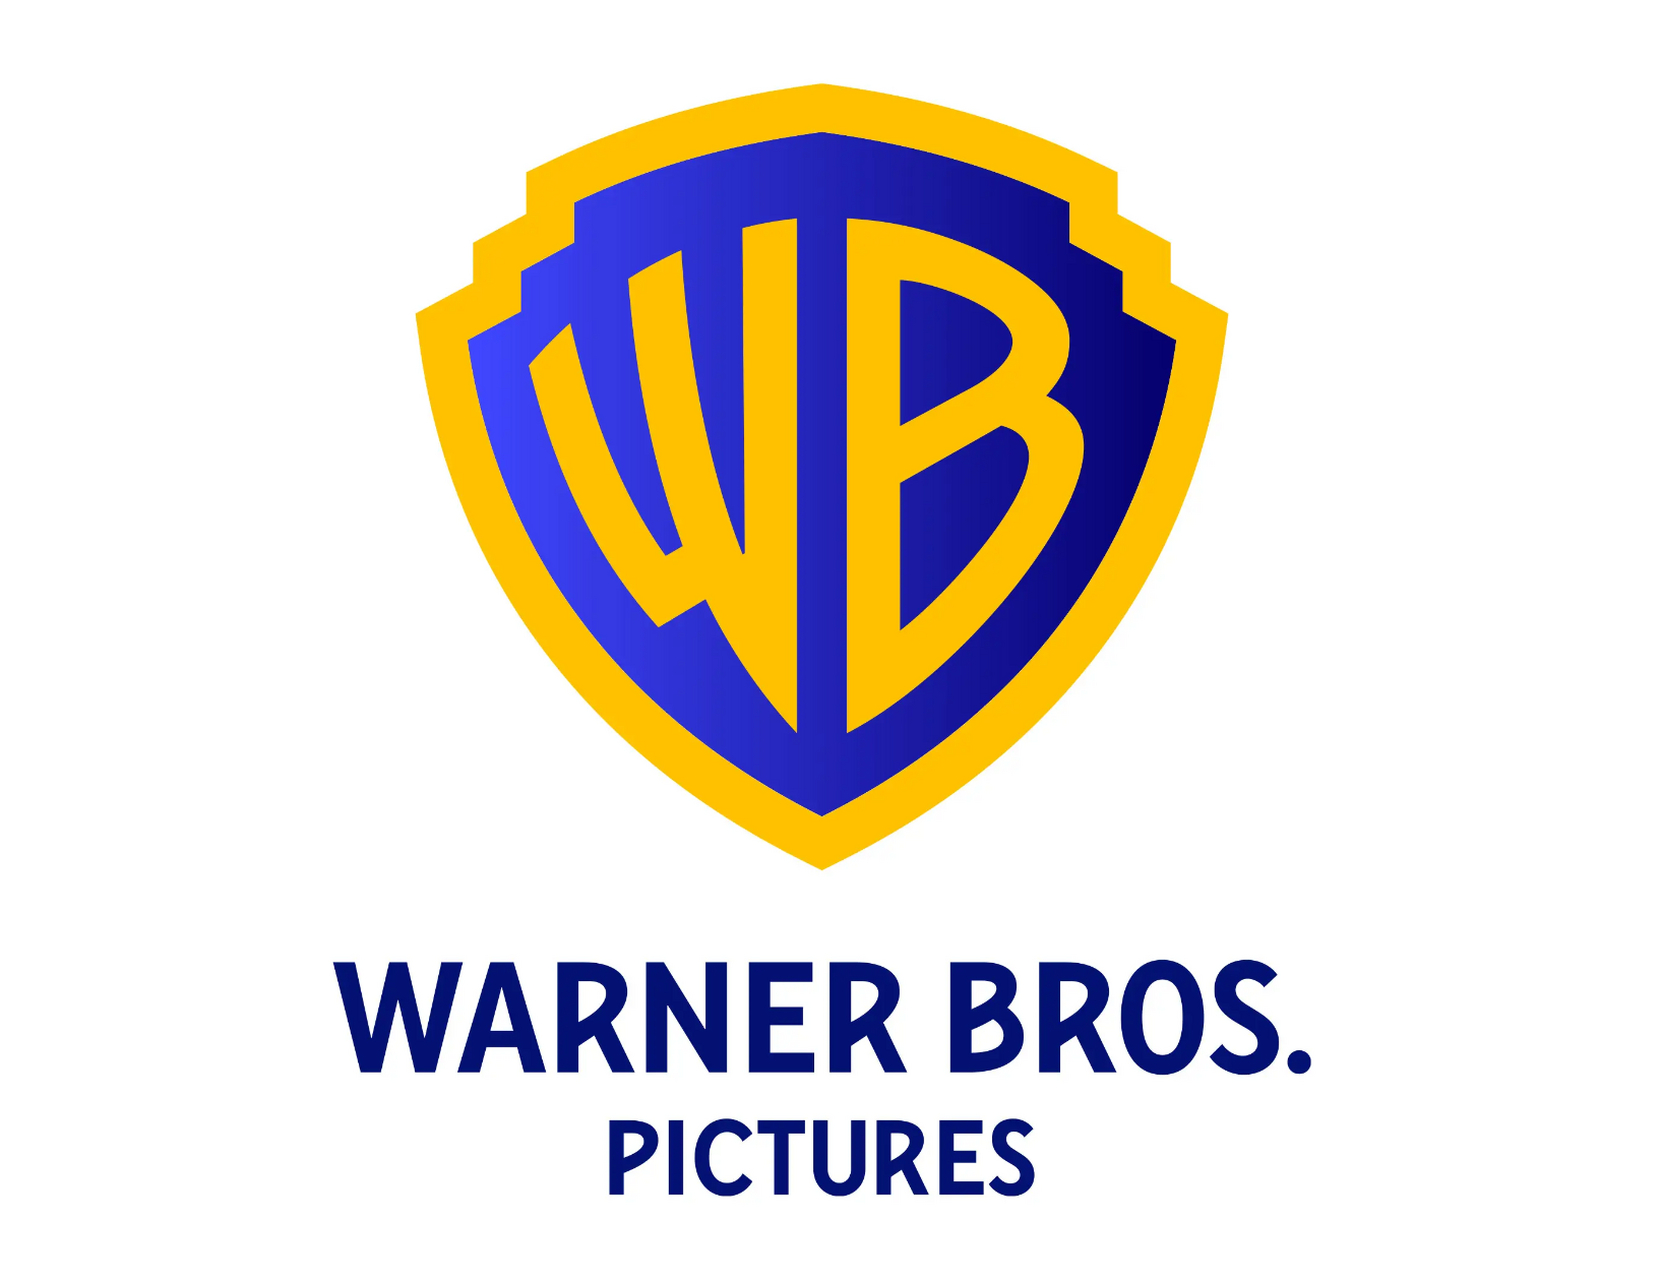 华纳兄弟logo变化图片